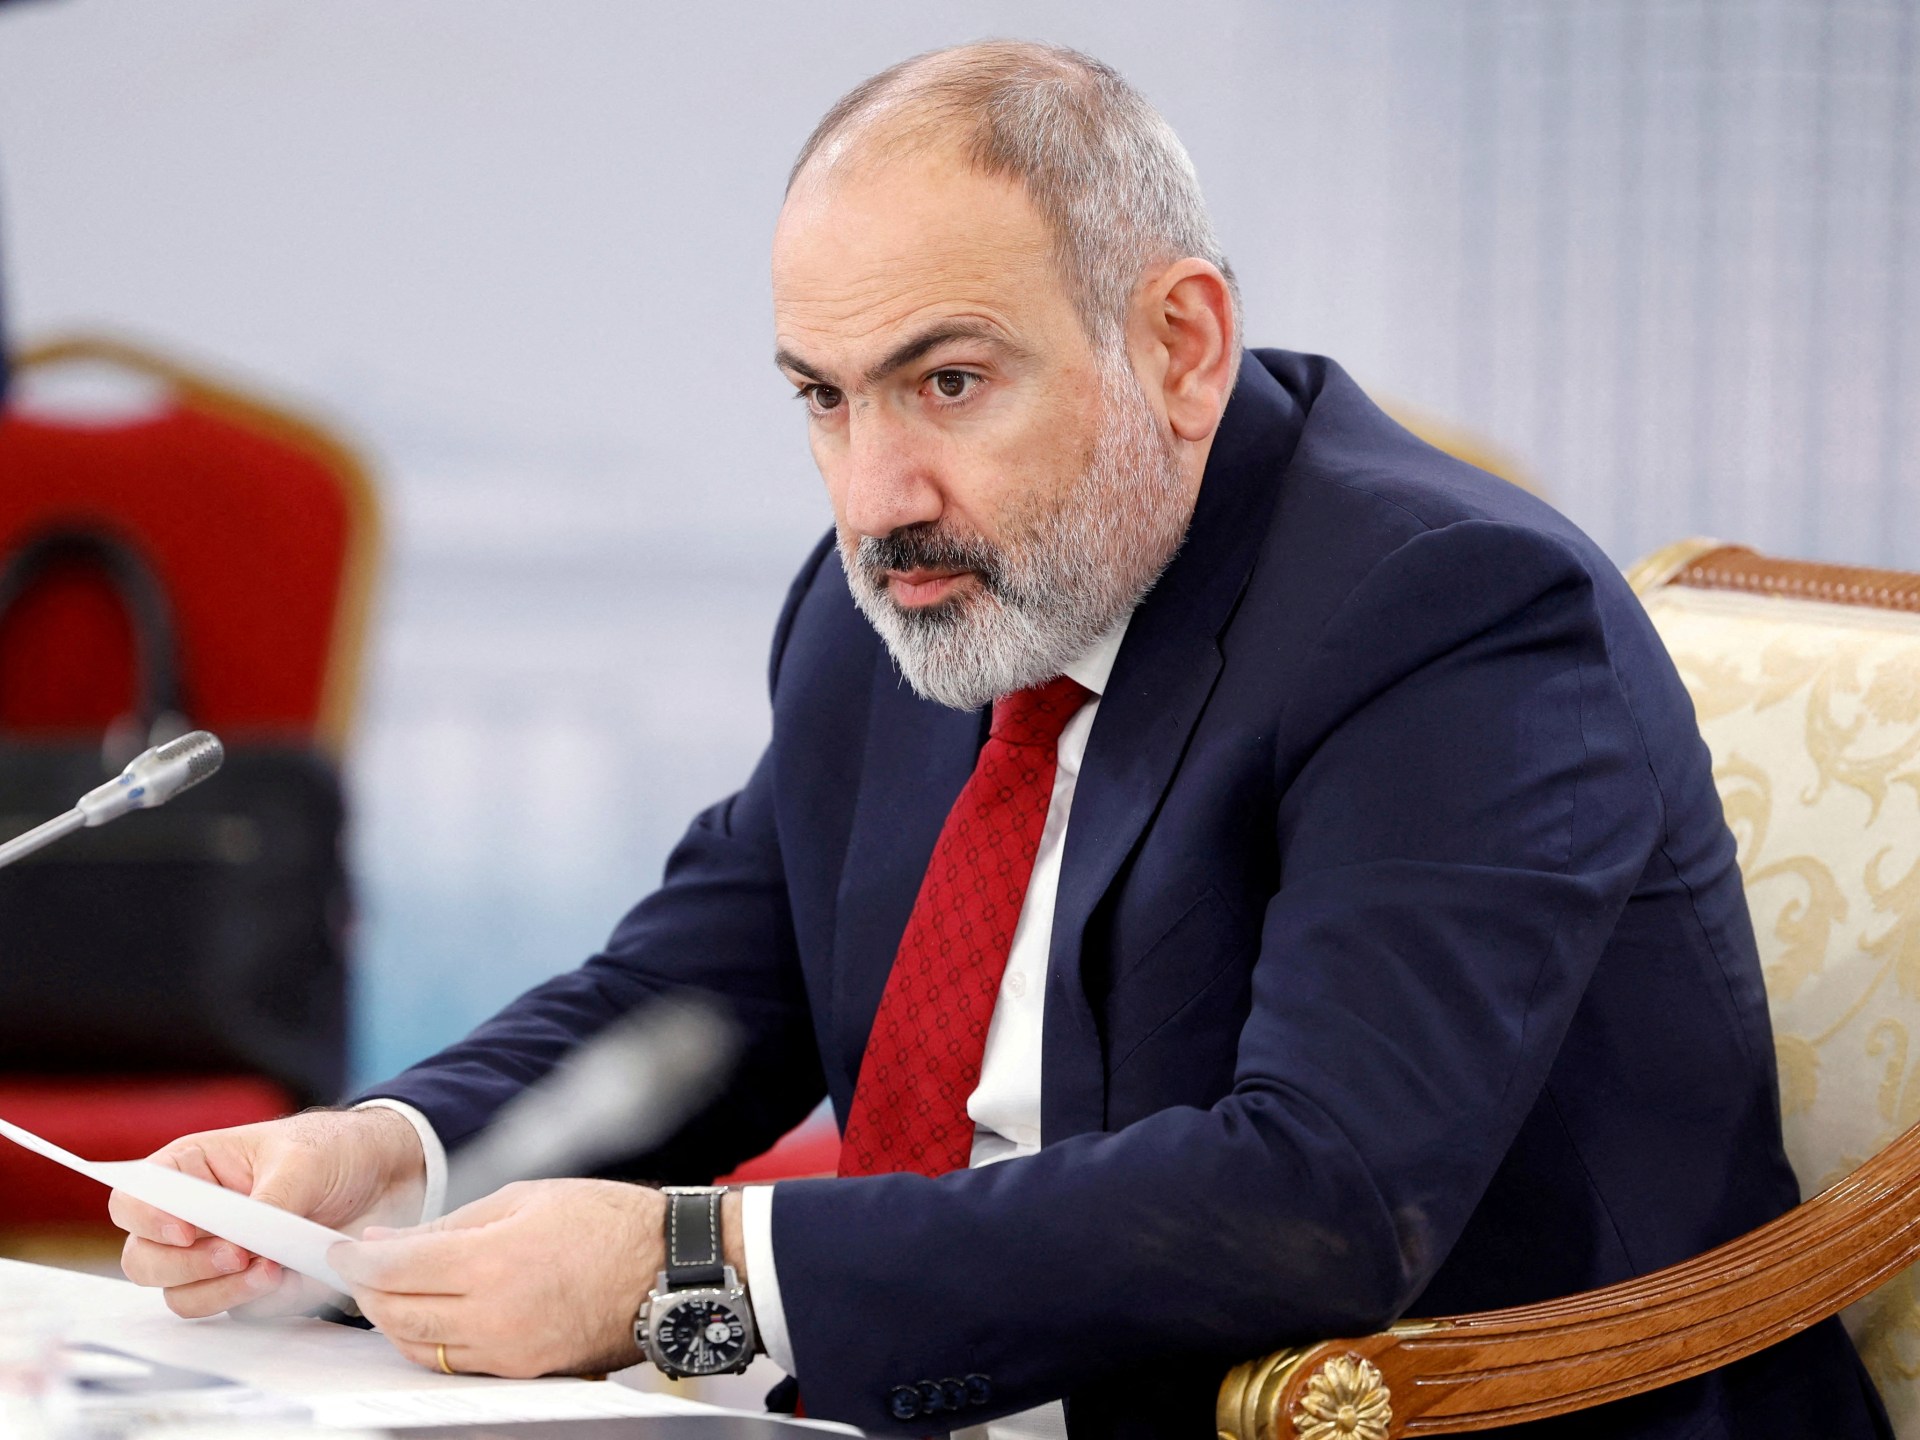 Le Premier ministre arménien prévient que l’Azerbaïdjan pourrait déclencher une guerre à propos de villages frontaliers contestés |  Actualités sur les conflits